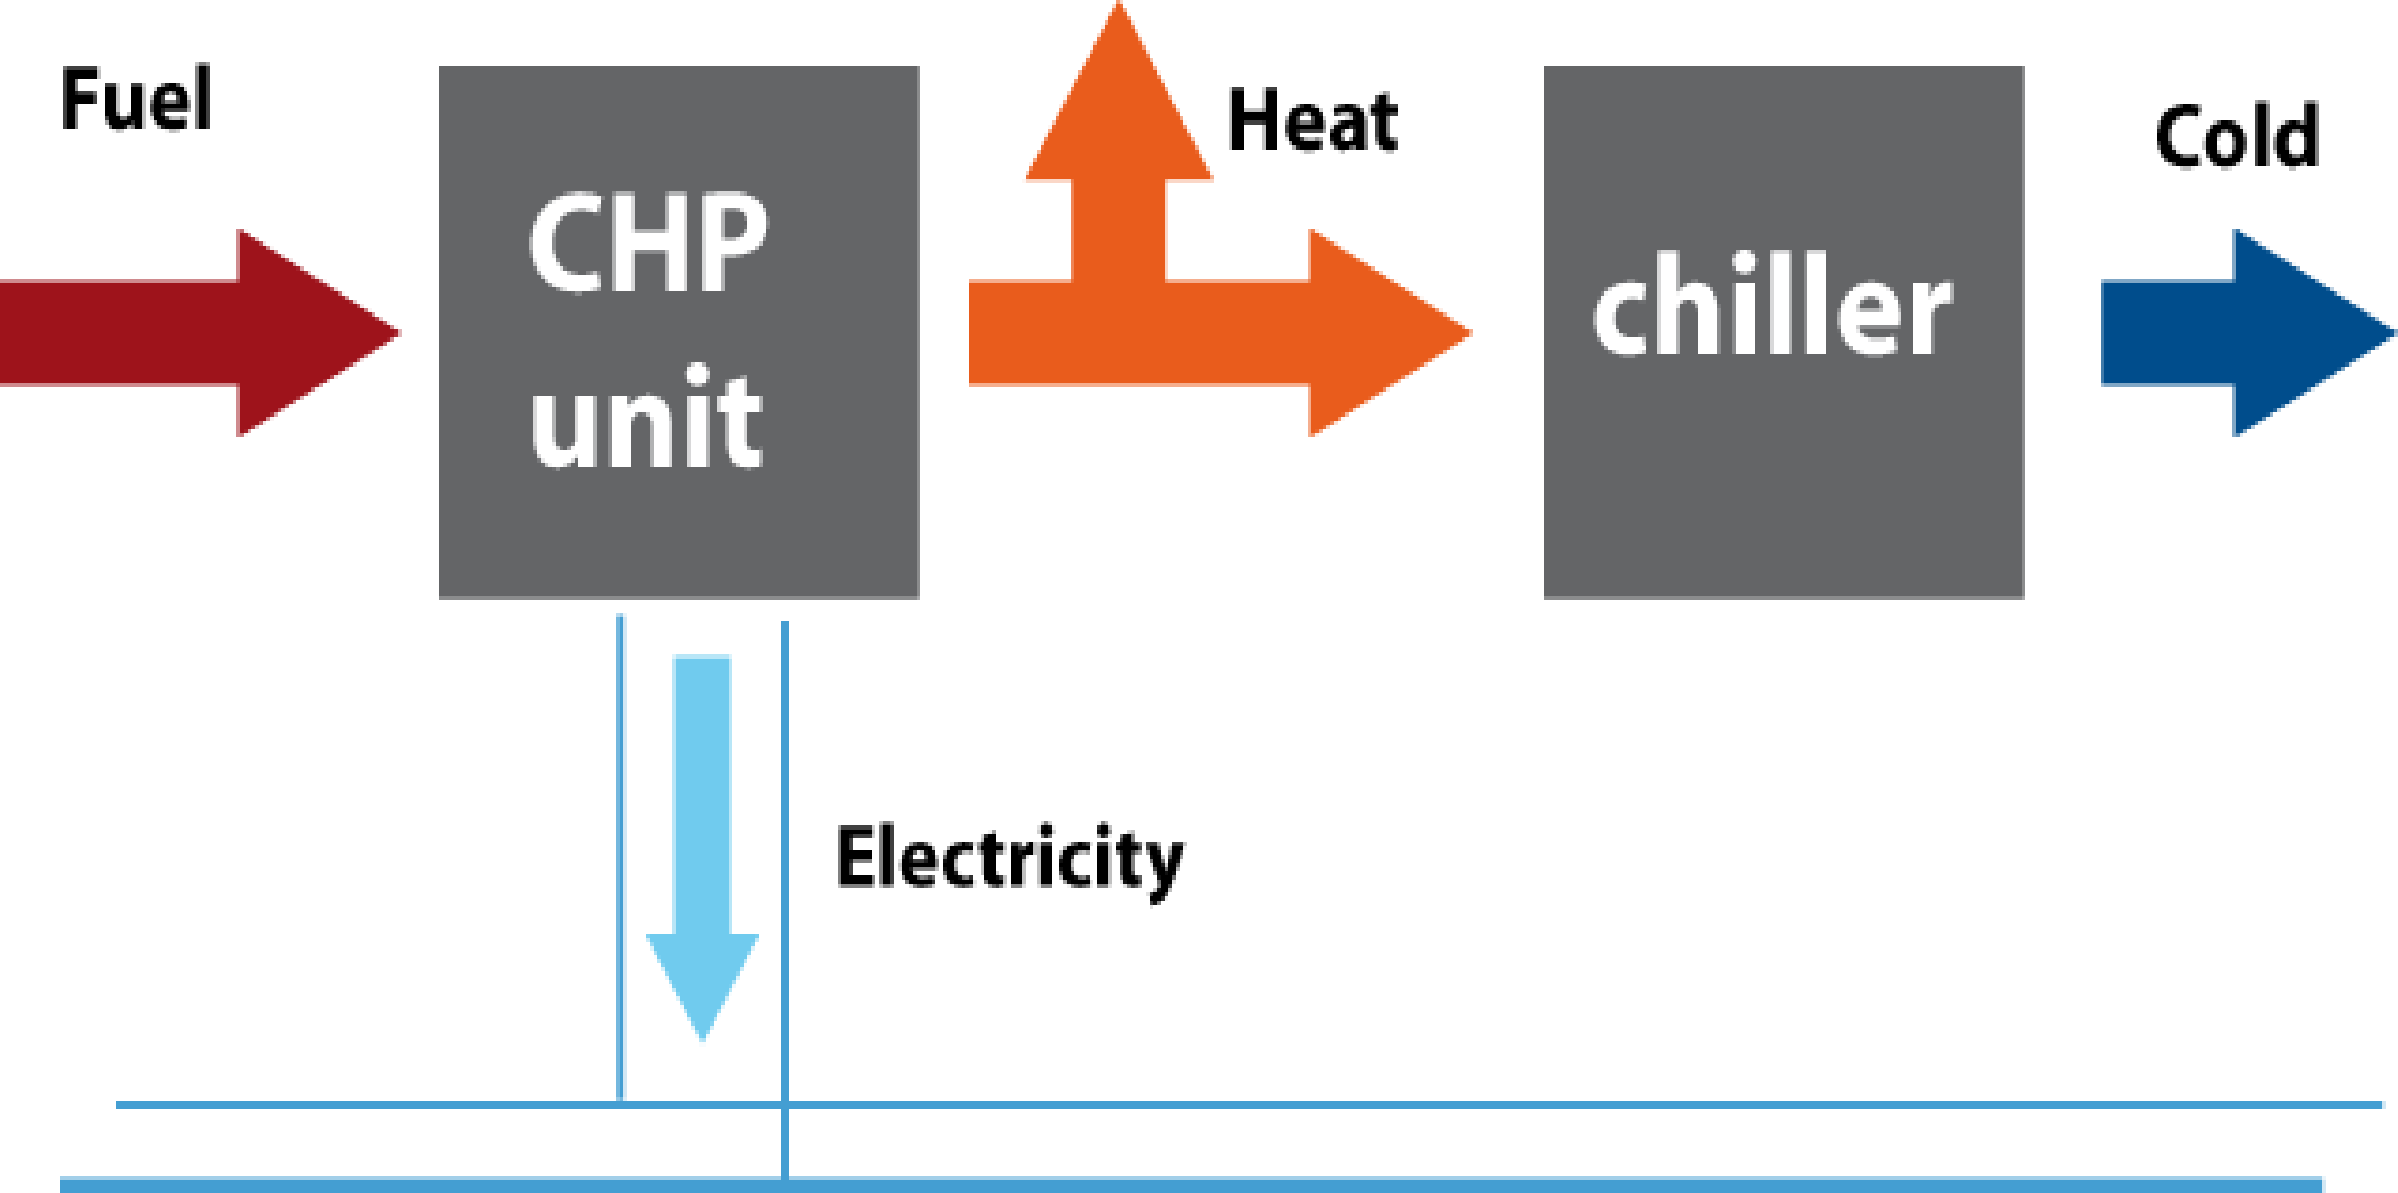 Τρι-Παραγωγή (Tri-generation) + Είναι η ταυτόχρονη δυνατότητα παραγωγής ηλεκτρισμού/θέρμανσης/ψύξης